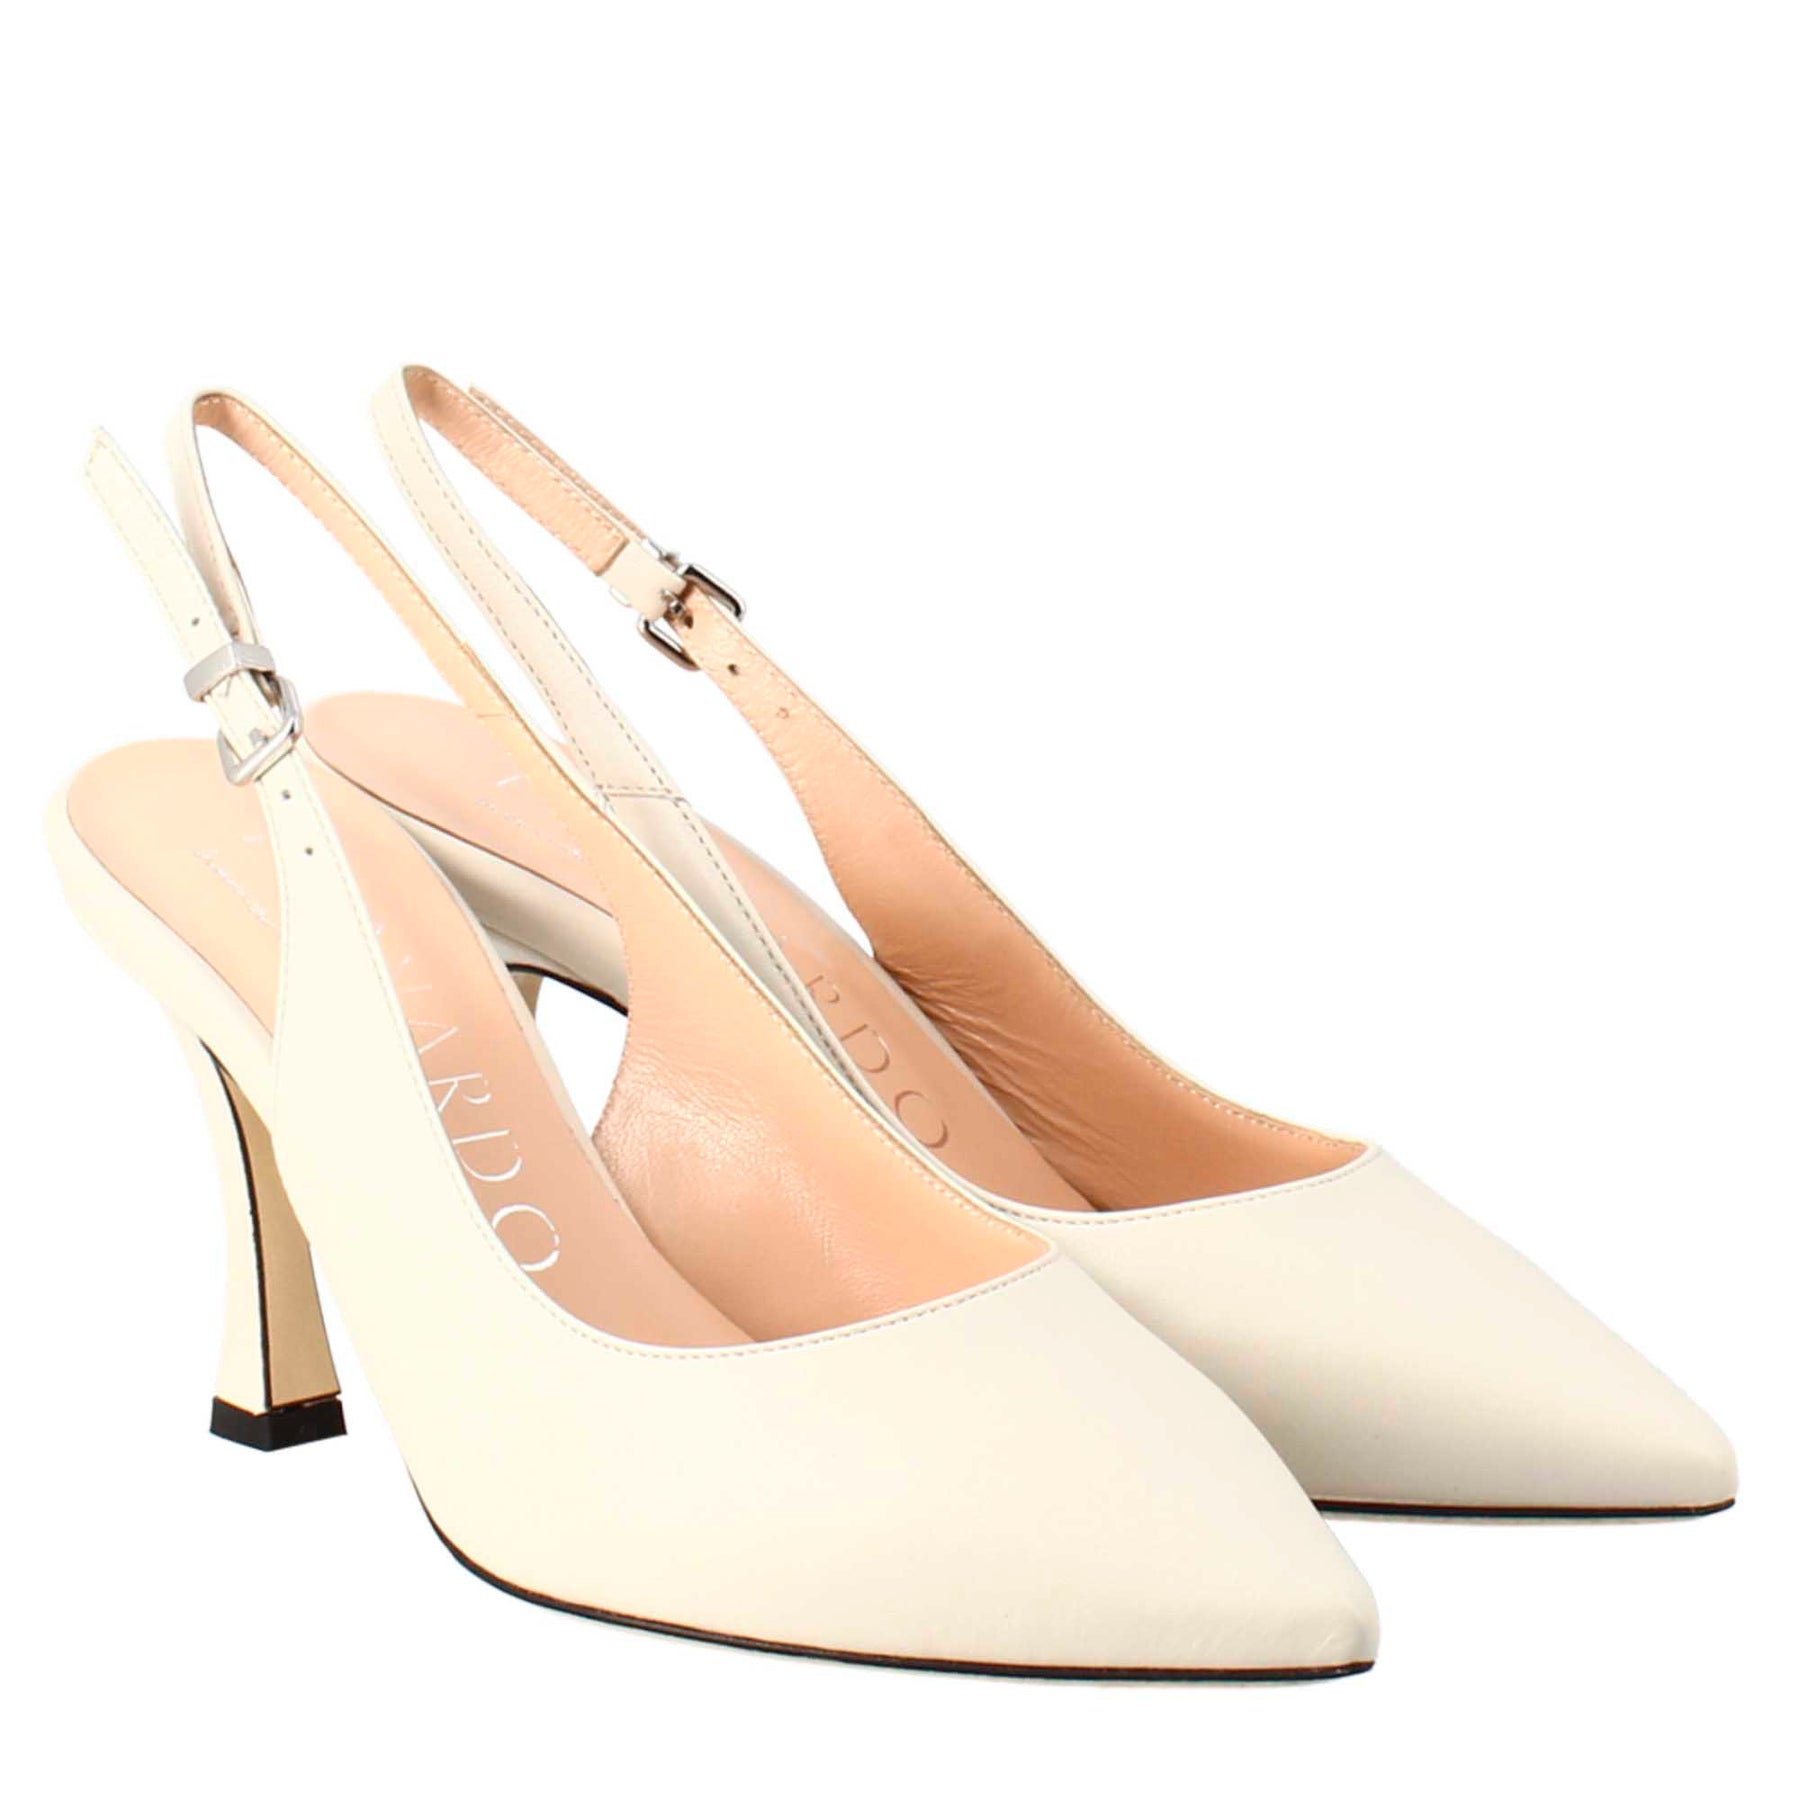 Vintage cream colored heels. Well loved. - Depop